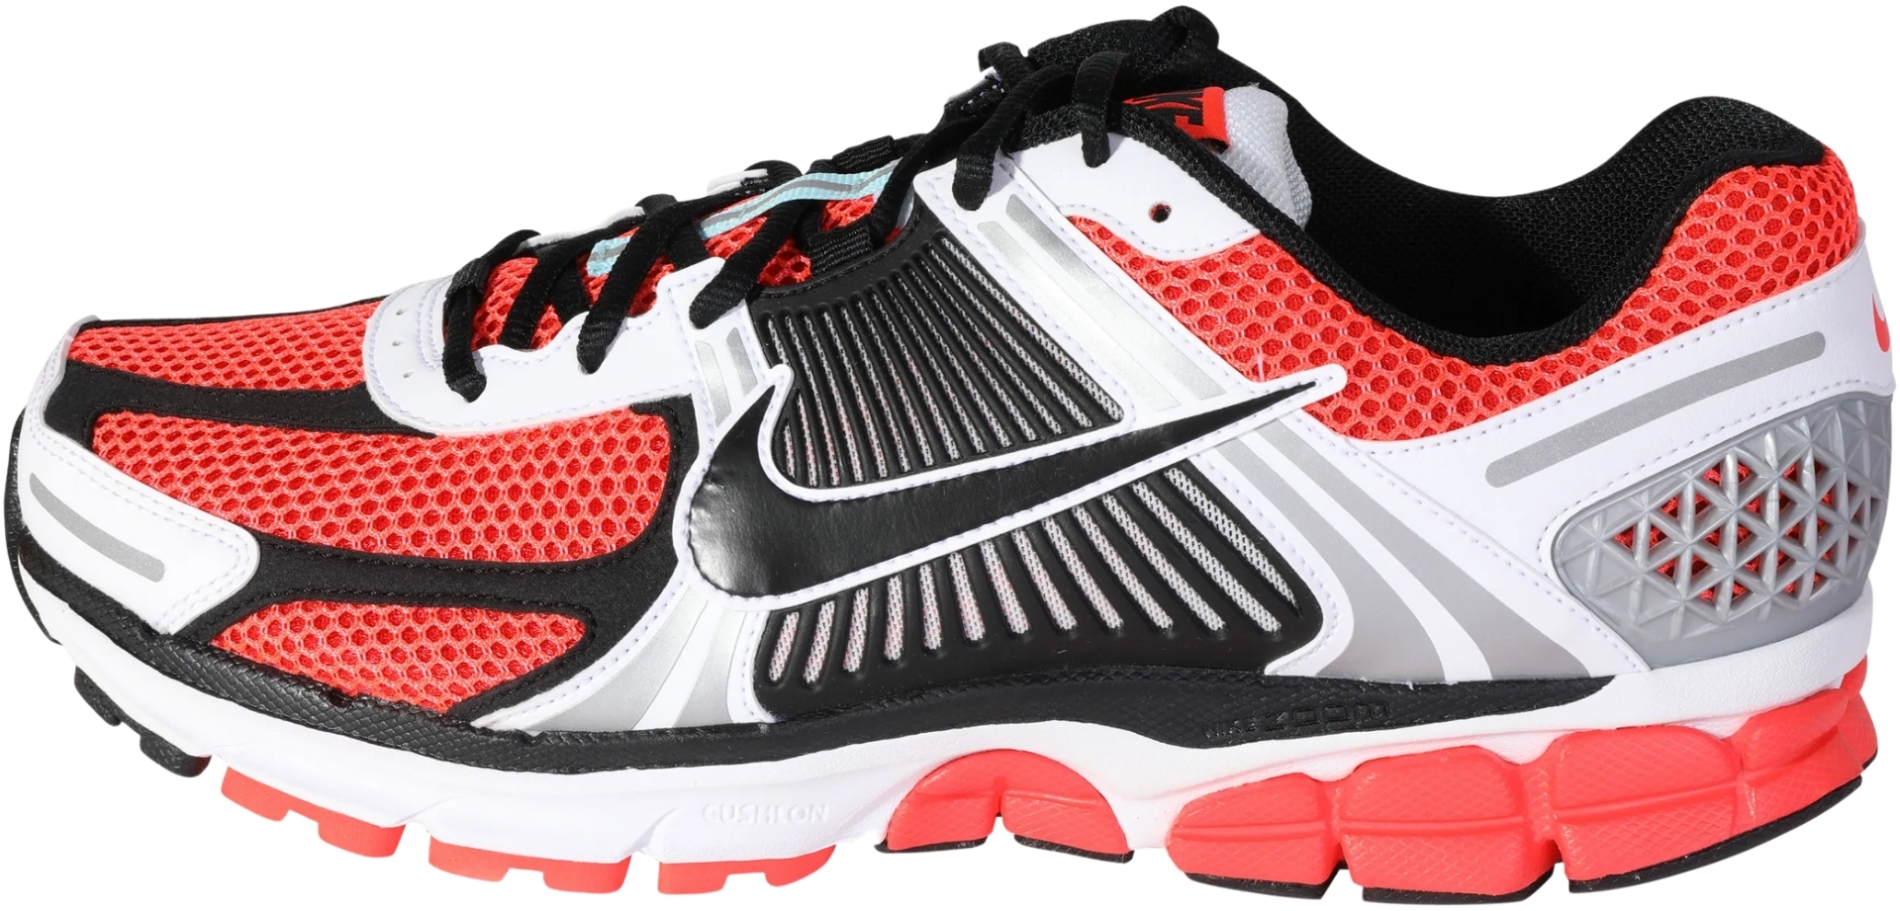 La risa luz de sol kiwi Nike Zoom Vomero 5 sneakers in red | RunRepeat